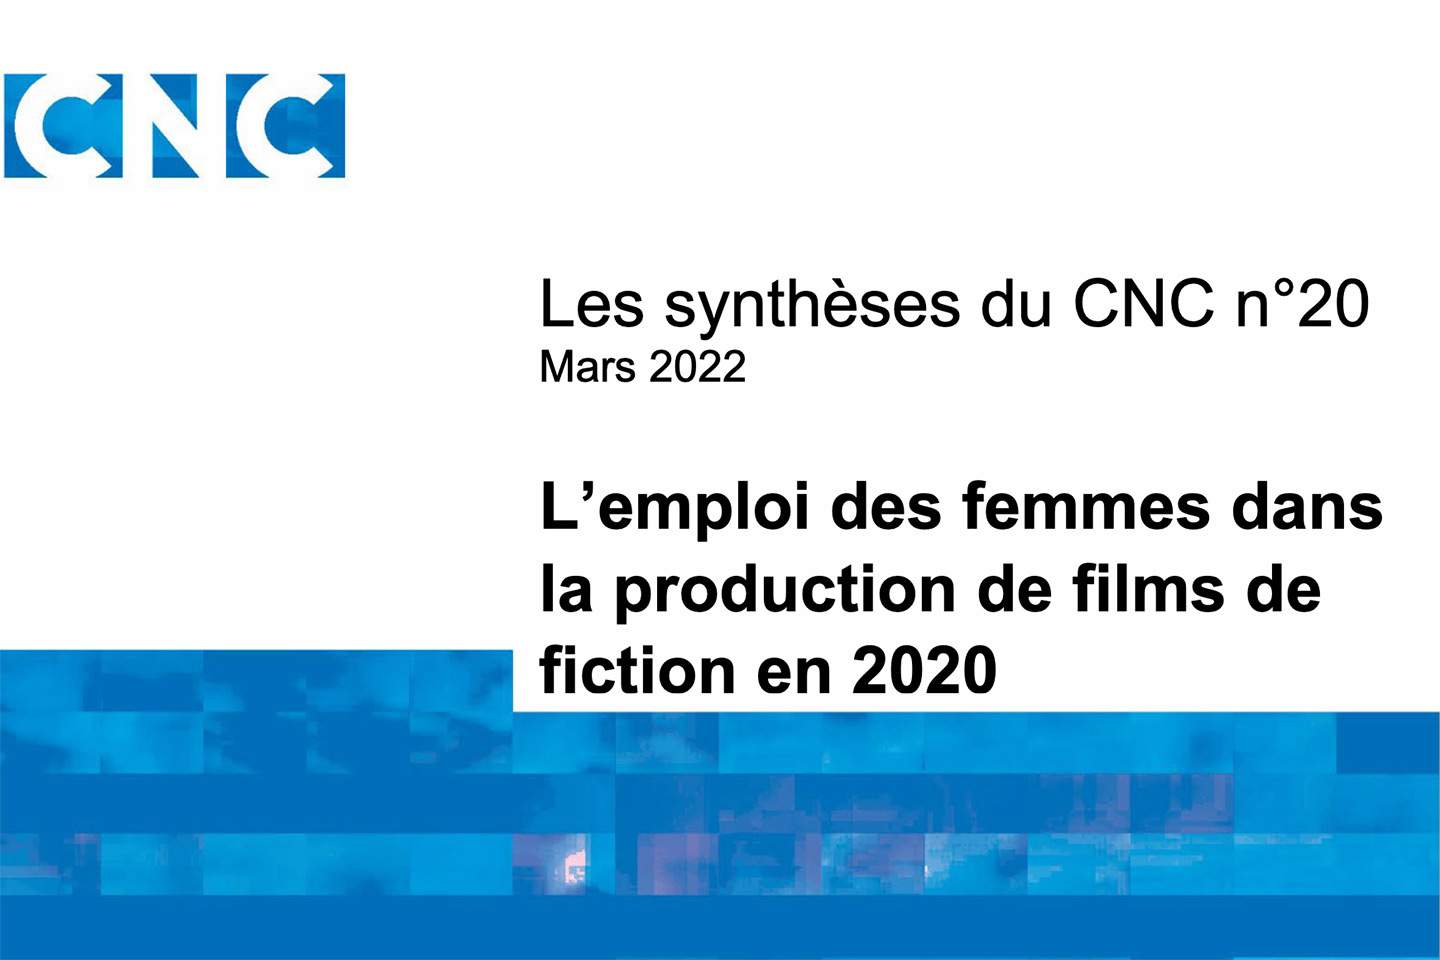 L'emploi des femmes dans la production de films de fiction en 2020